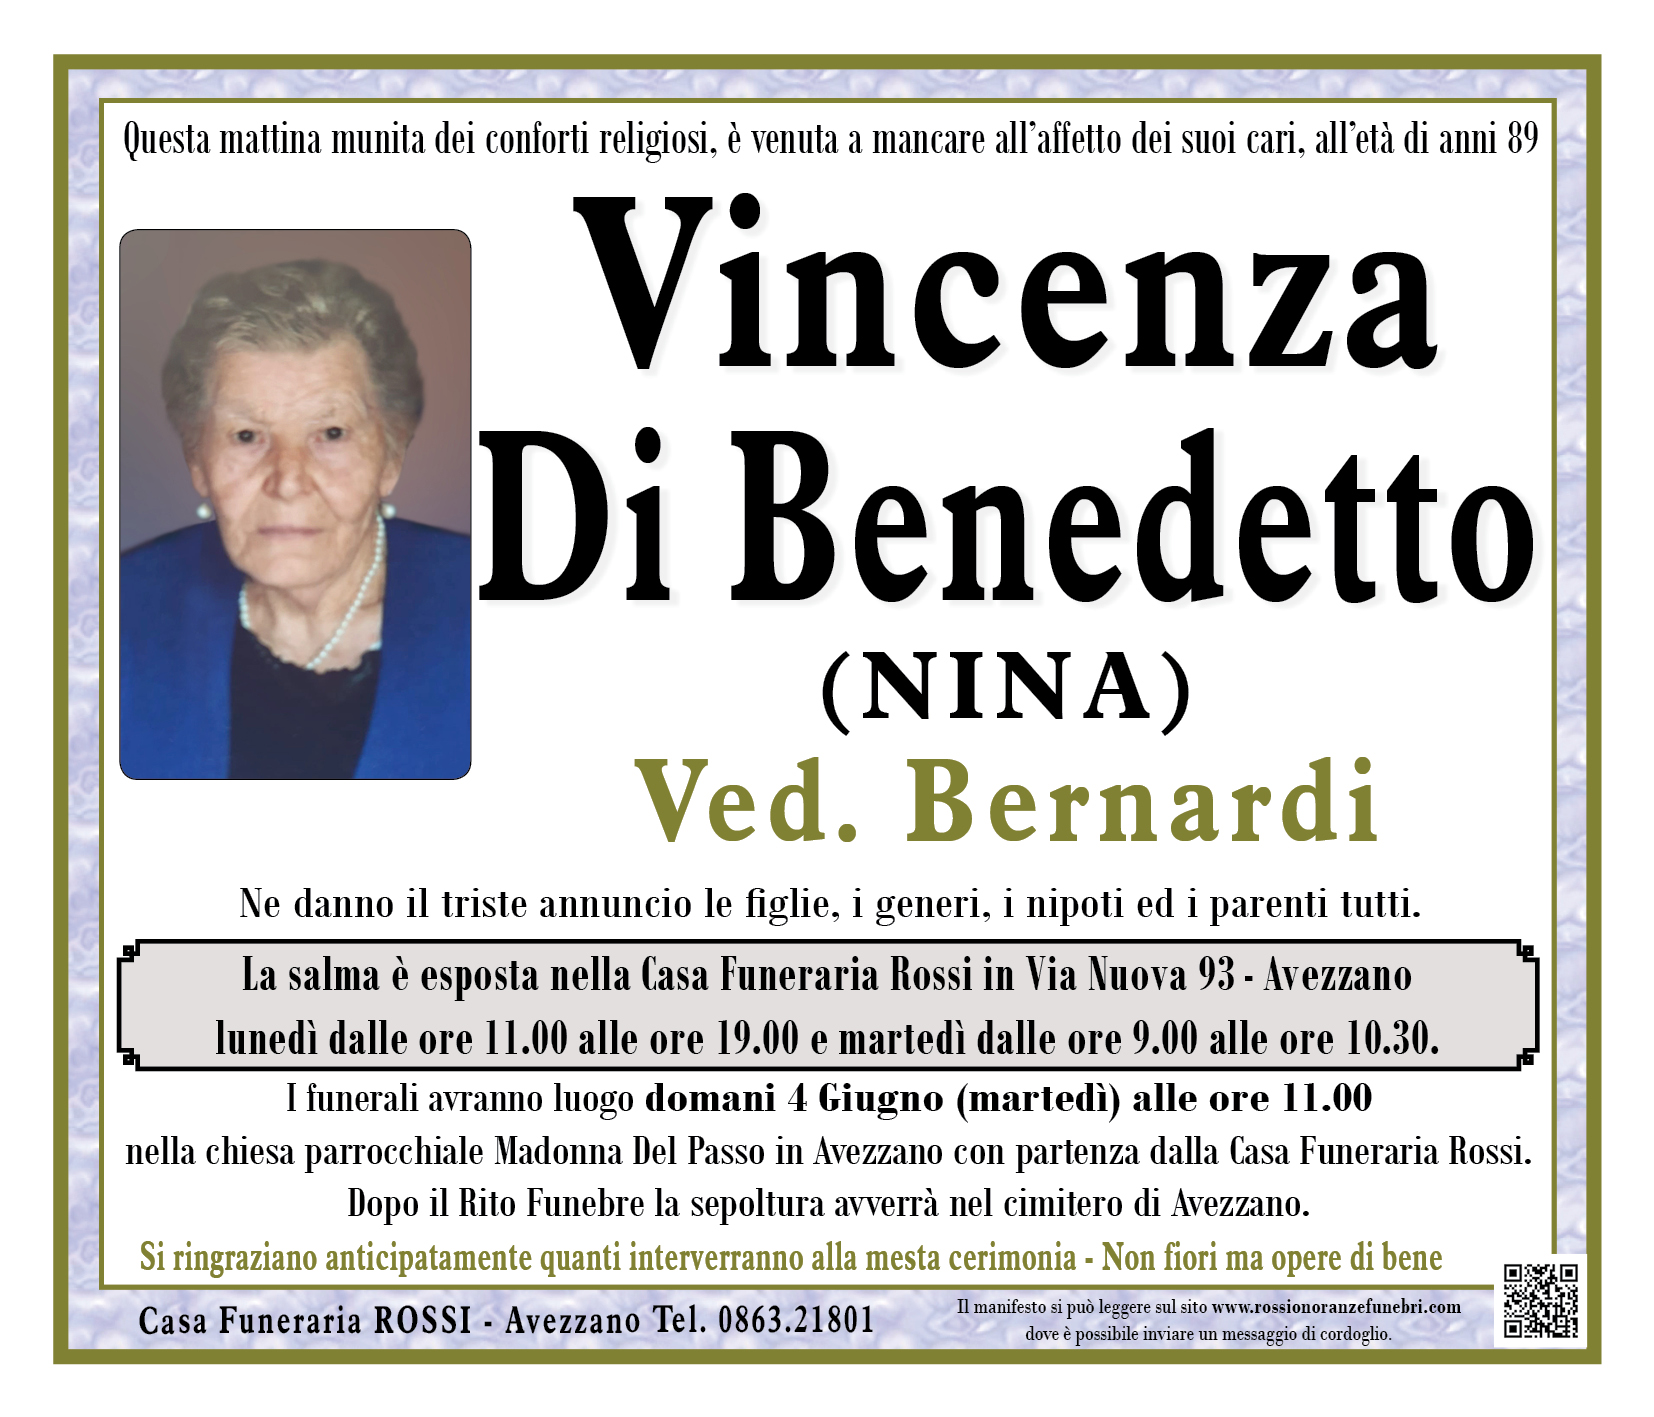 Vincenza Di Benedetto